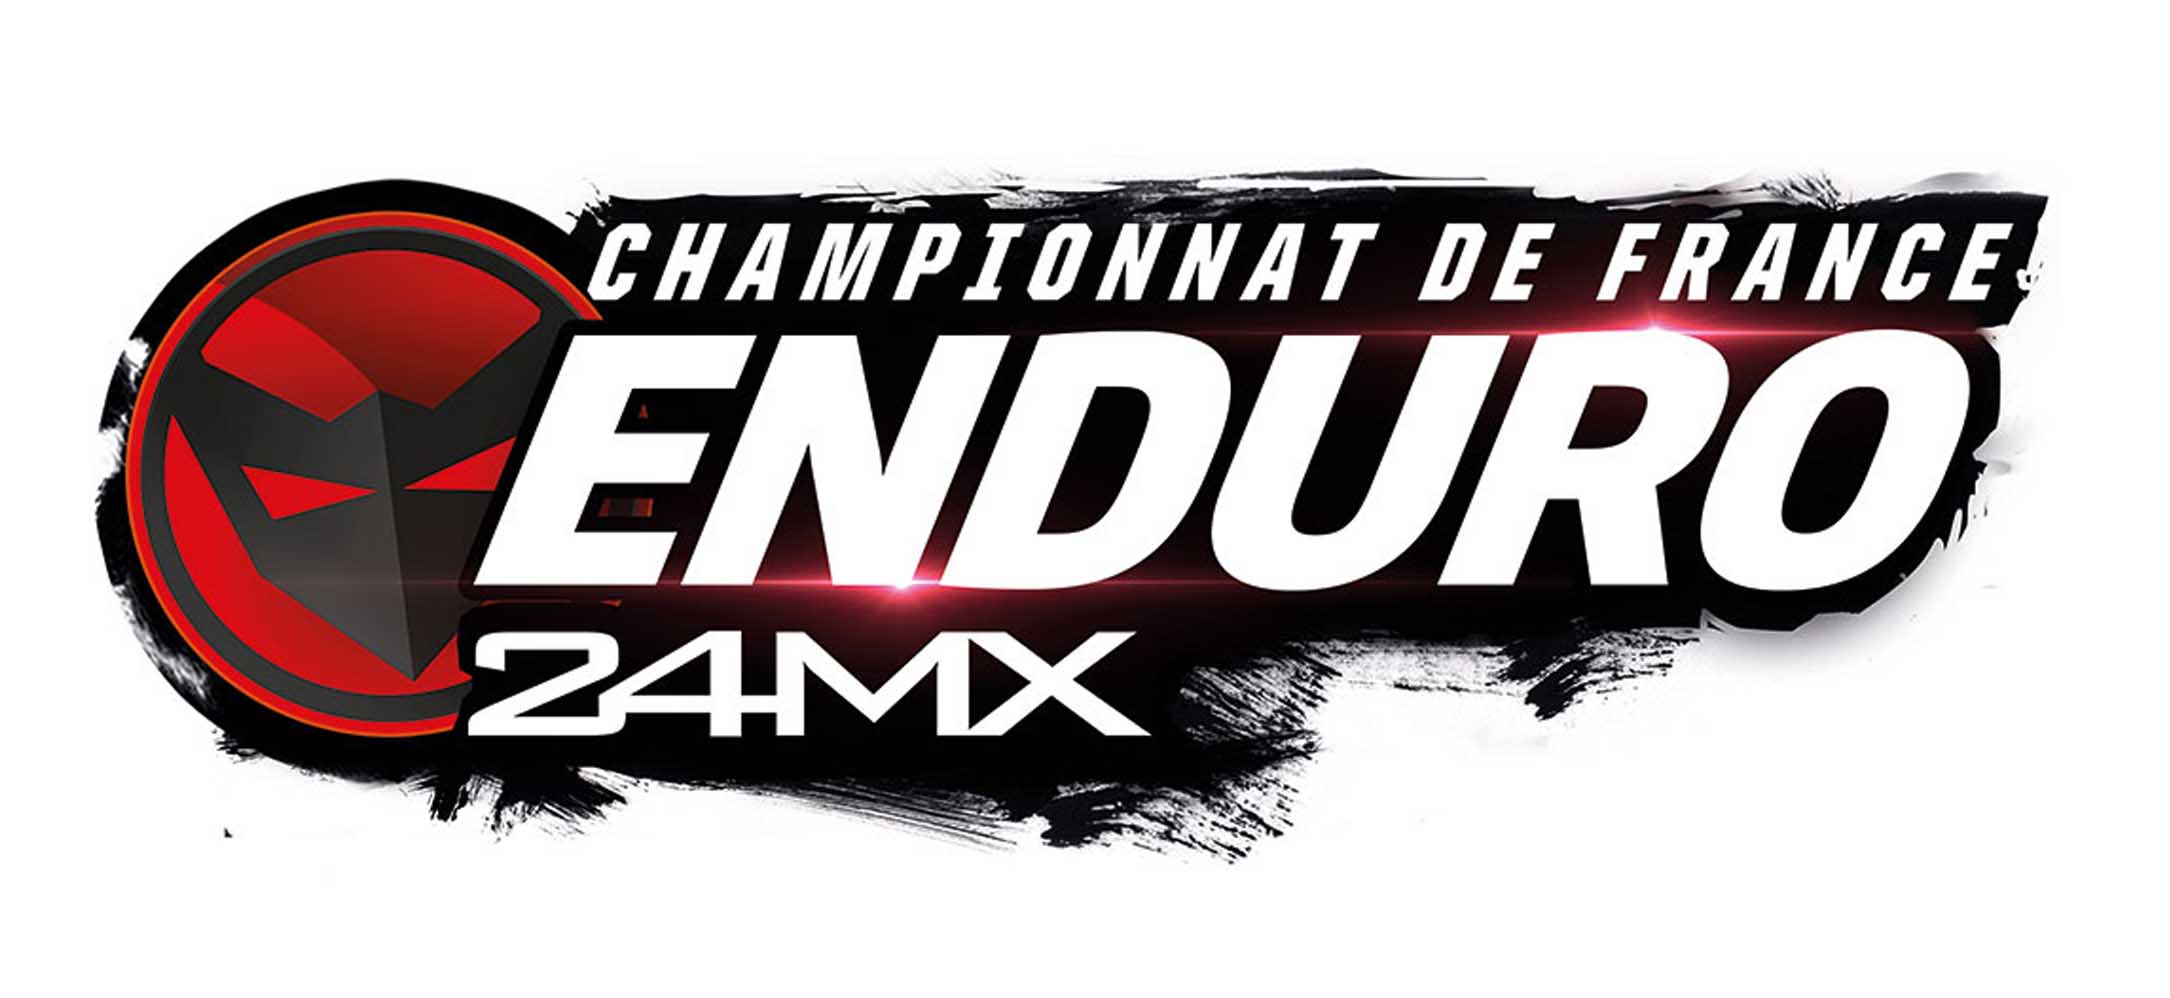 Réquista Moto Sport, Championnat de France Enduro 24MX